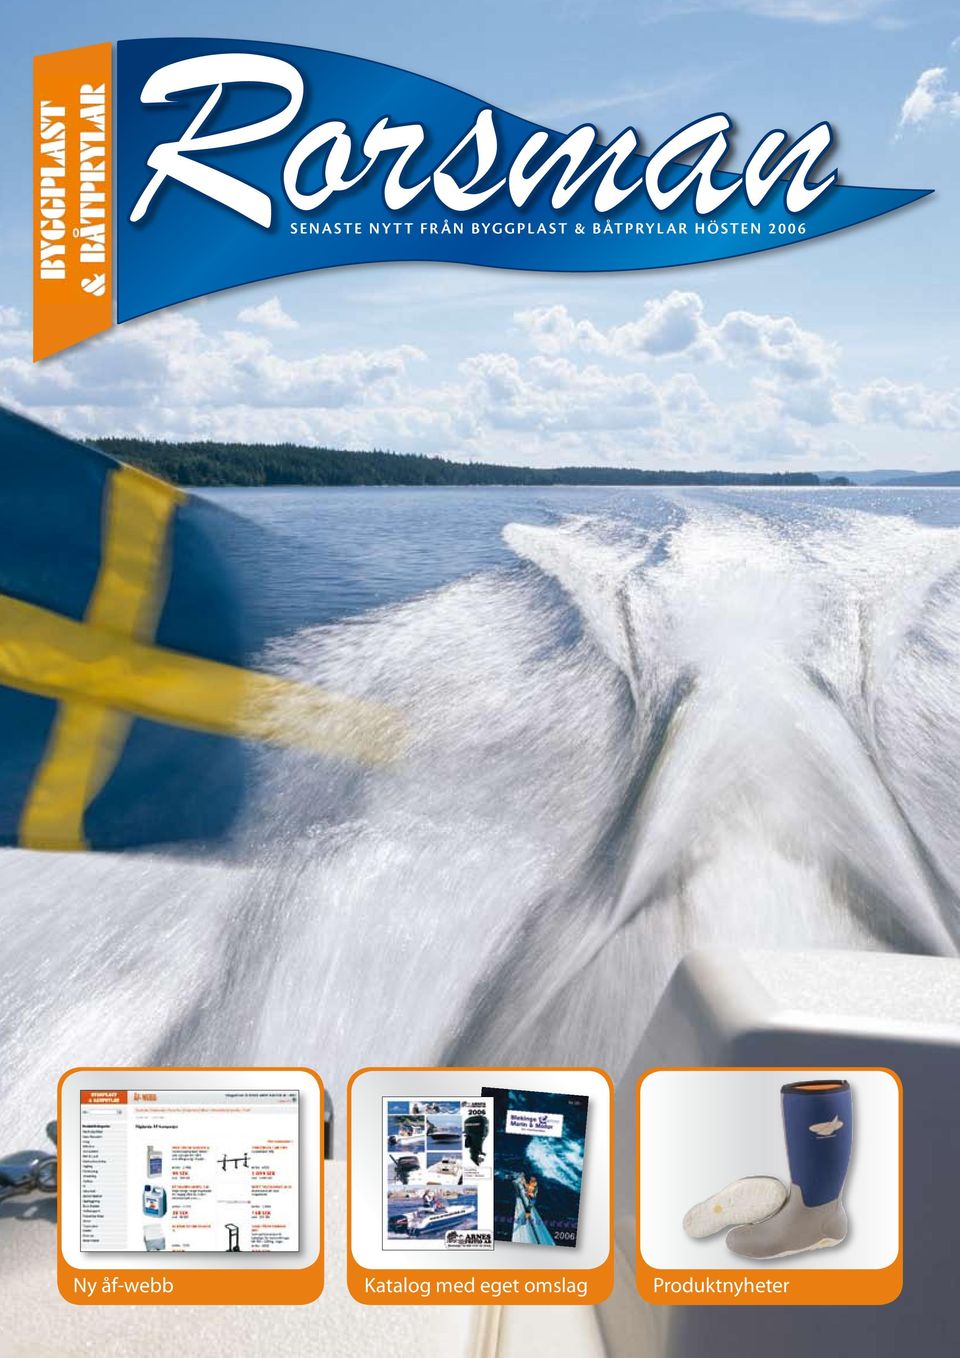 Ö STEN 2006 Ny åf-webb Katalog